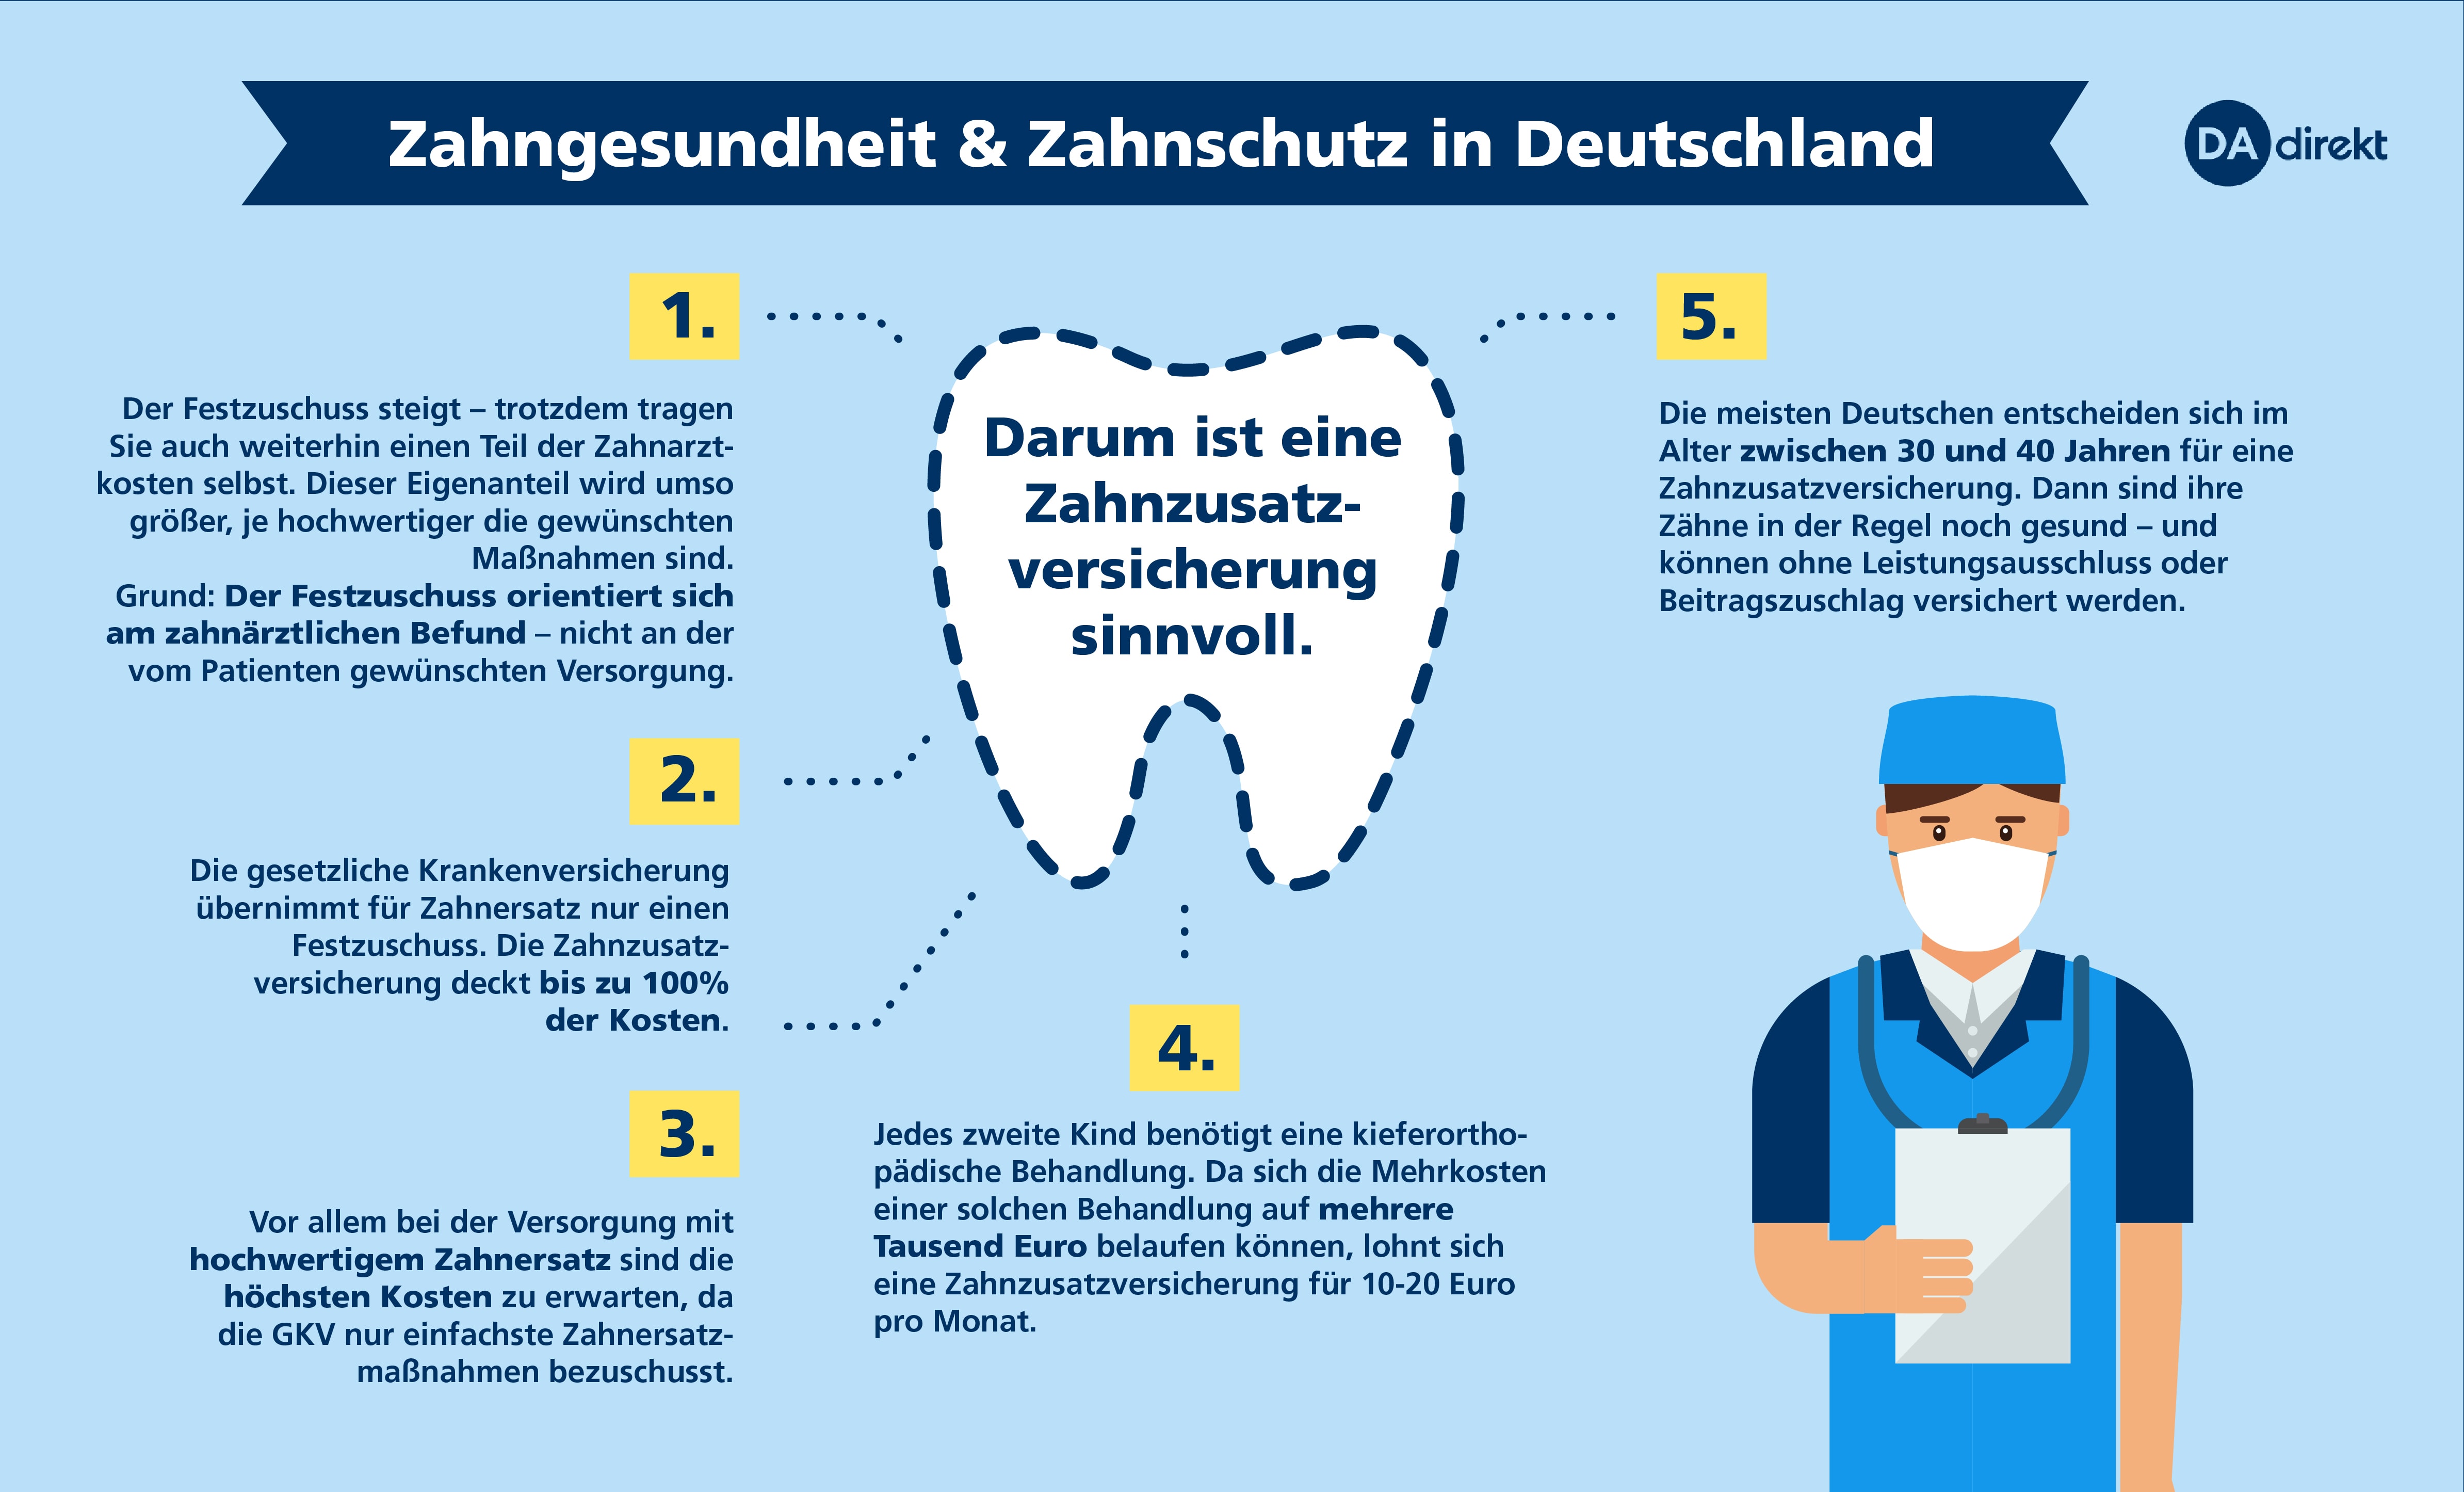 Zahngesundheit und Zahnschutz in Deutschland - DA Direkt